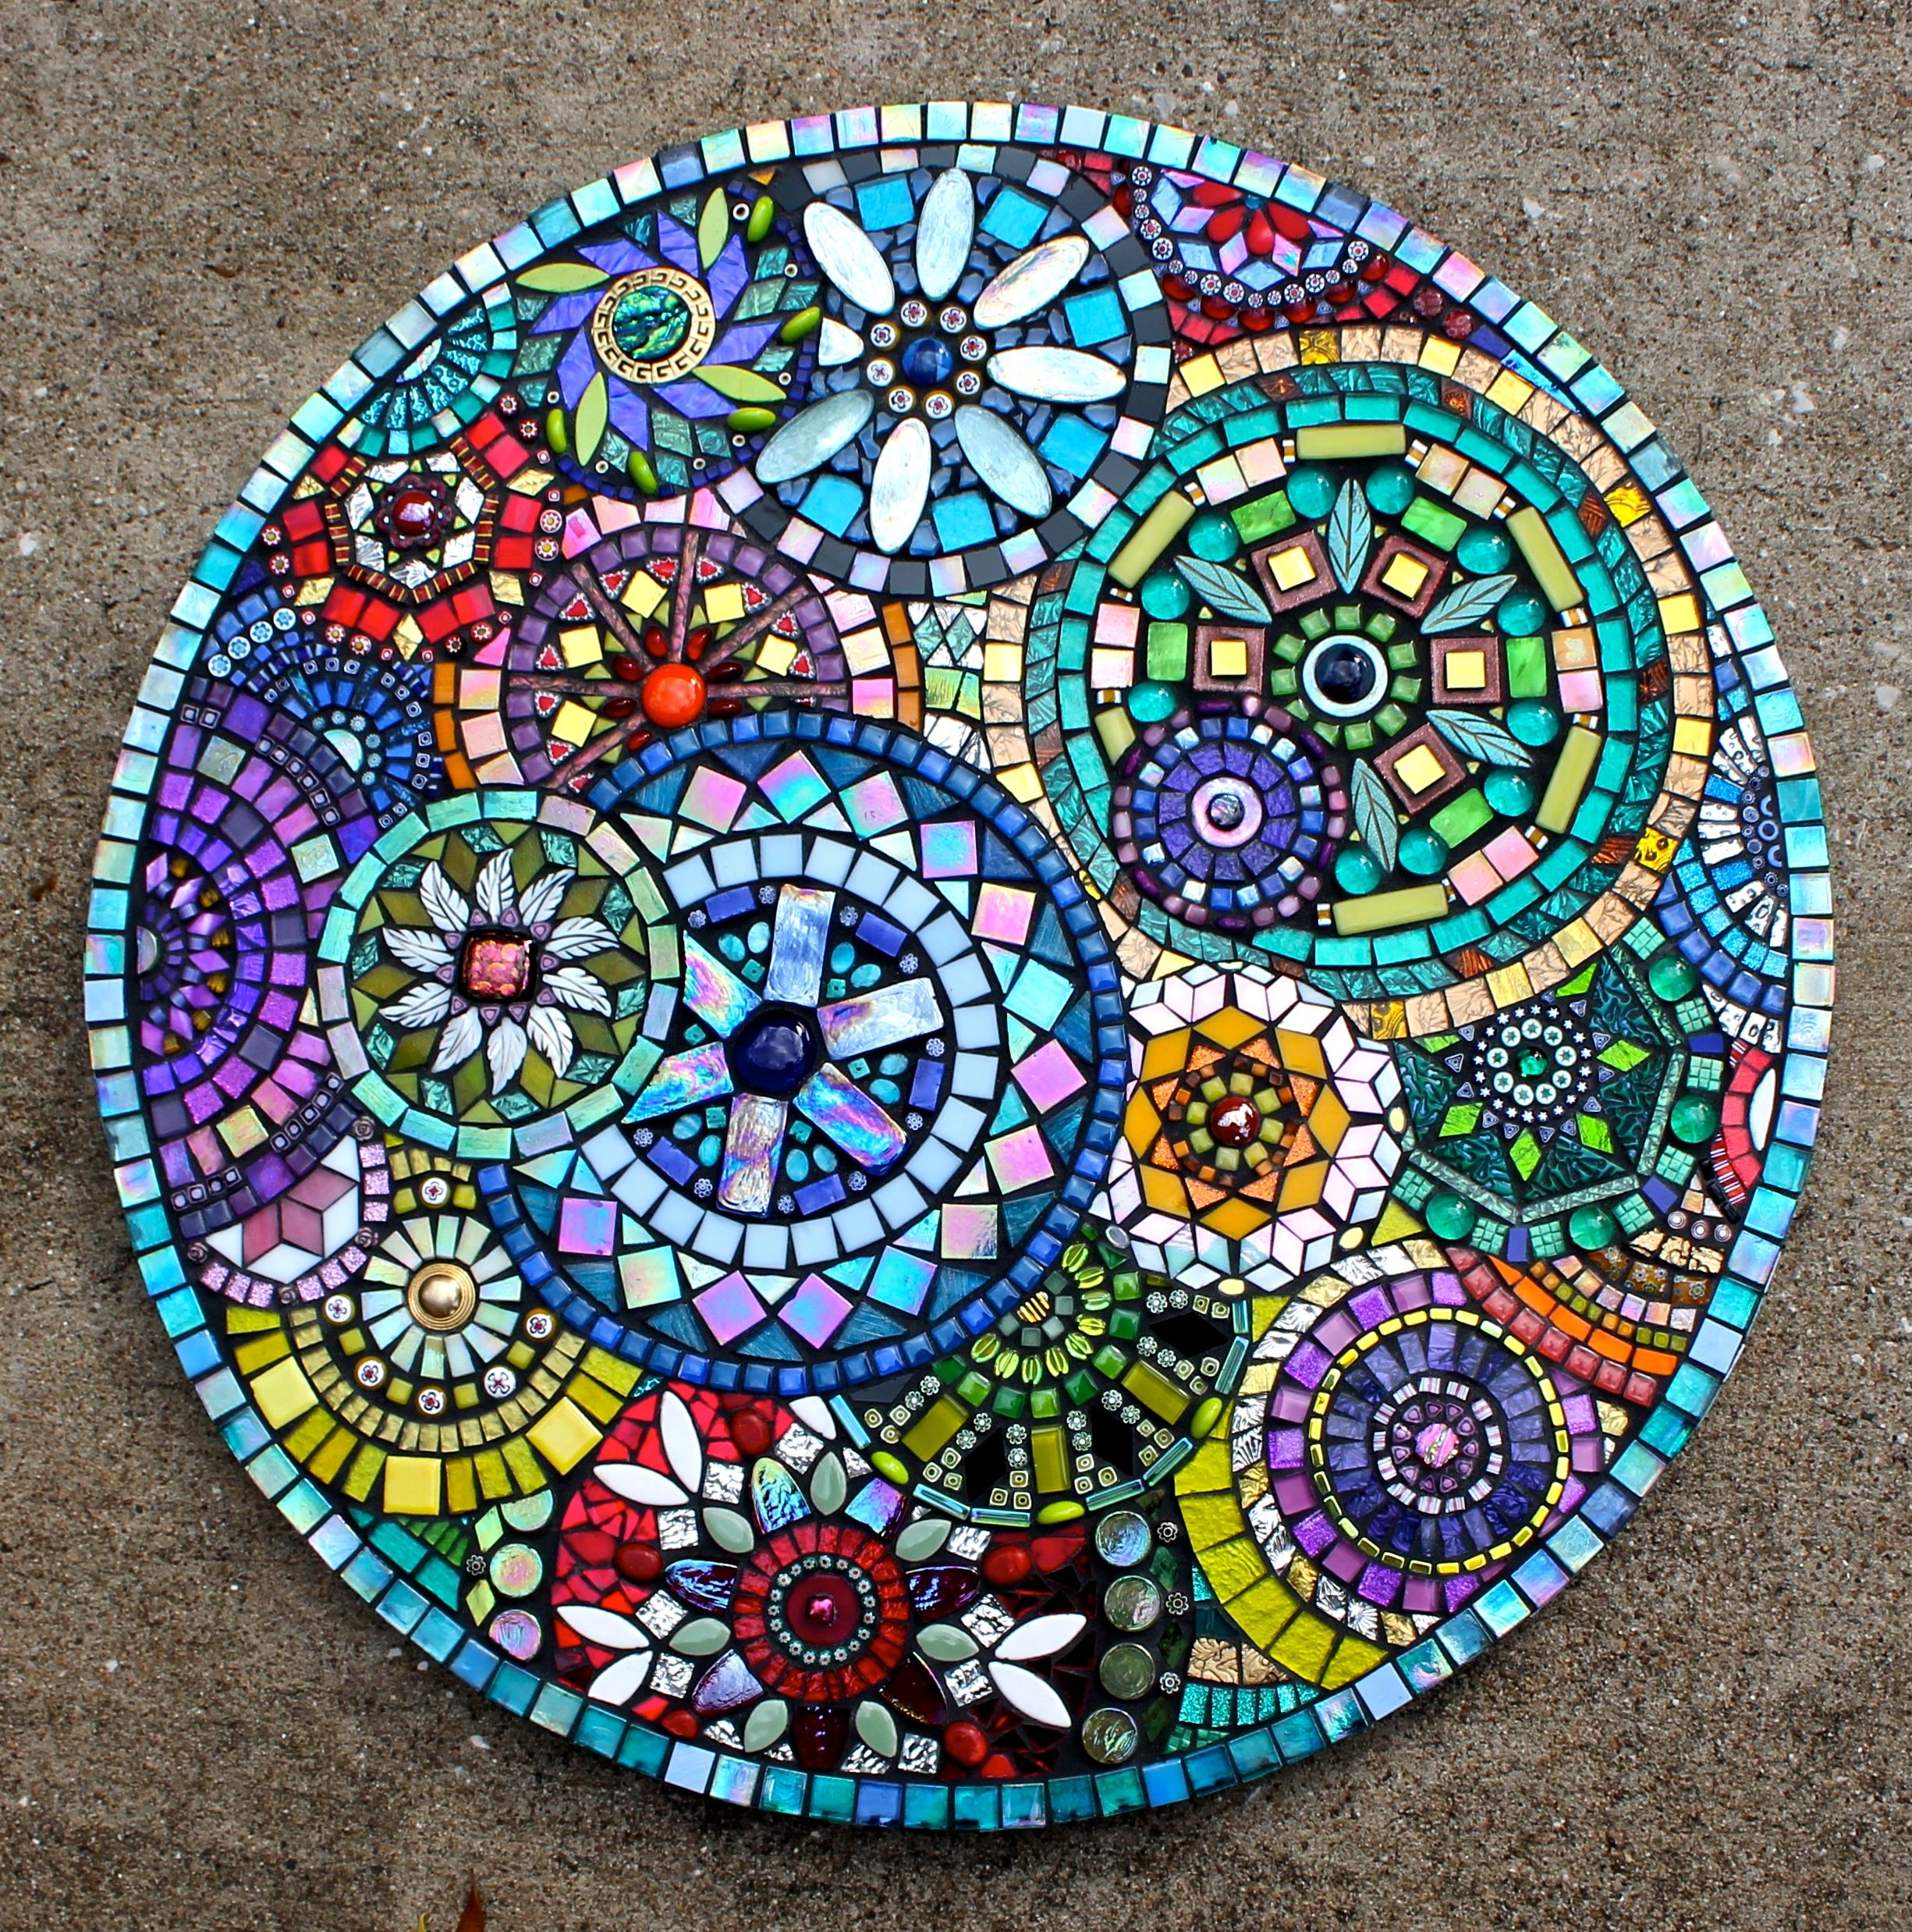 Mosaic by Plum Art Mosaics 2014 (Sharon Plummer) | Mosaics 6 ...